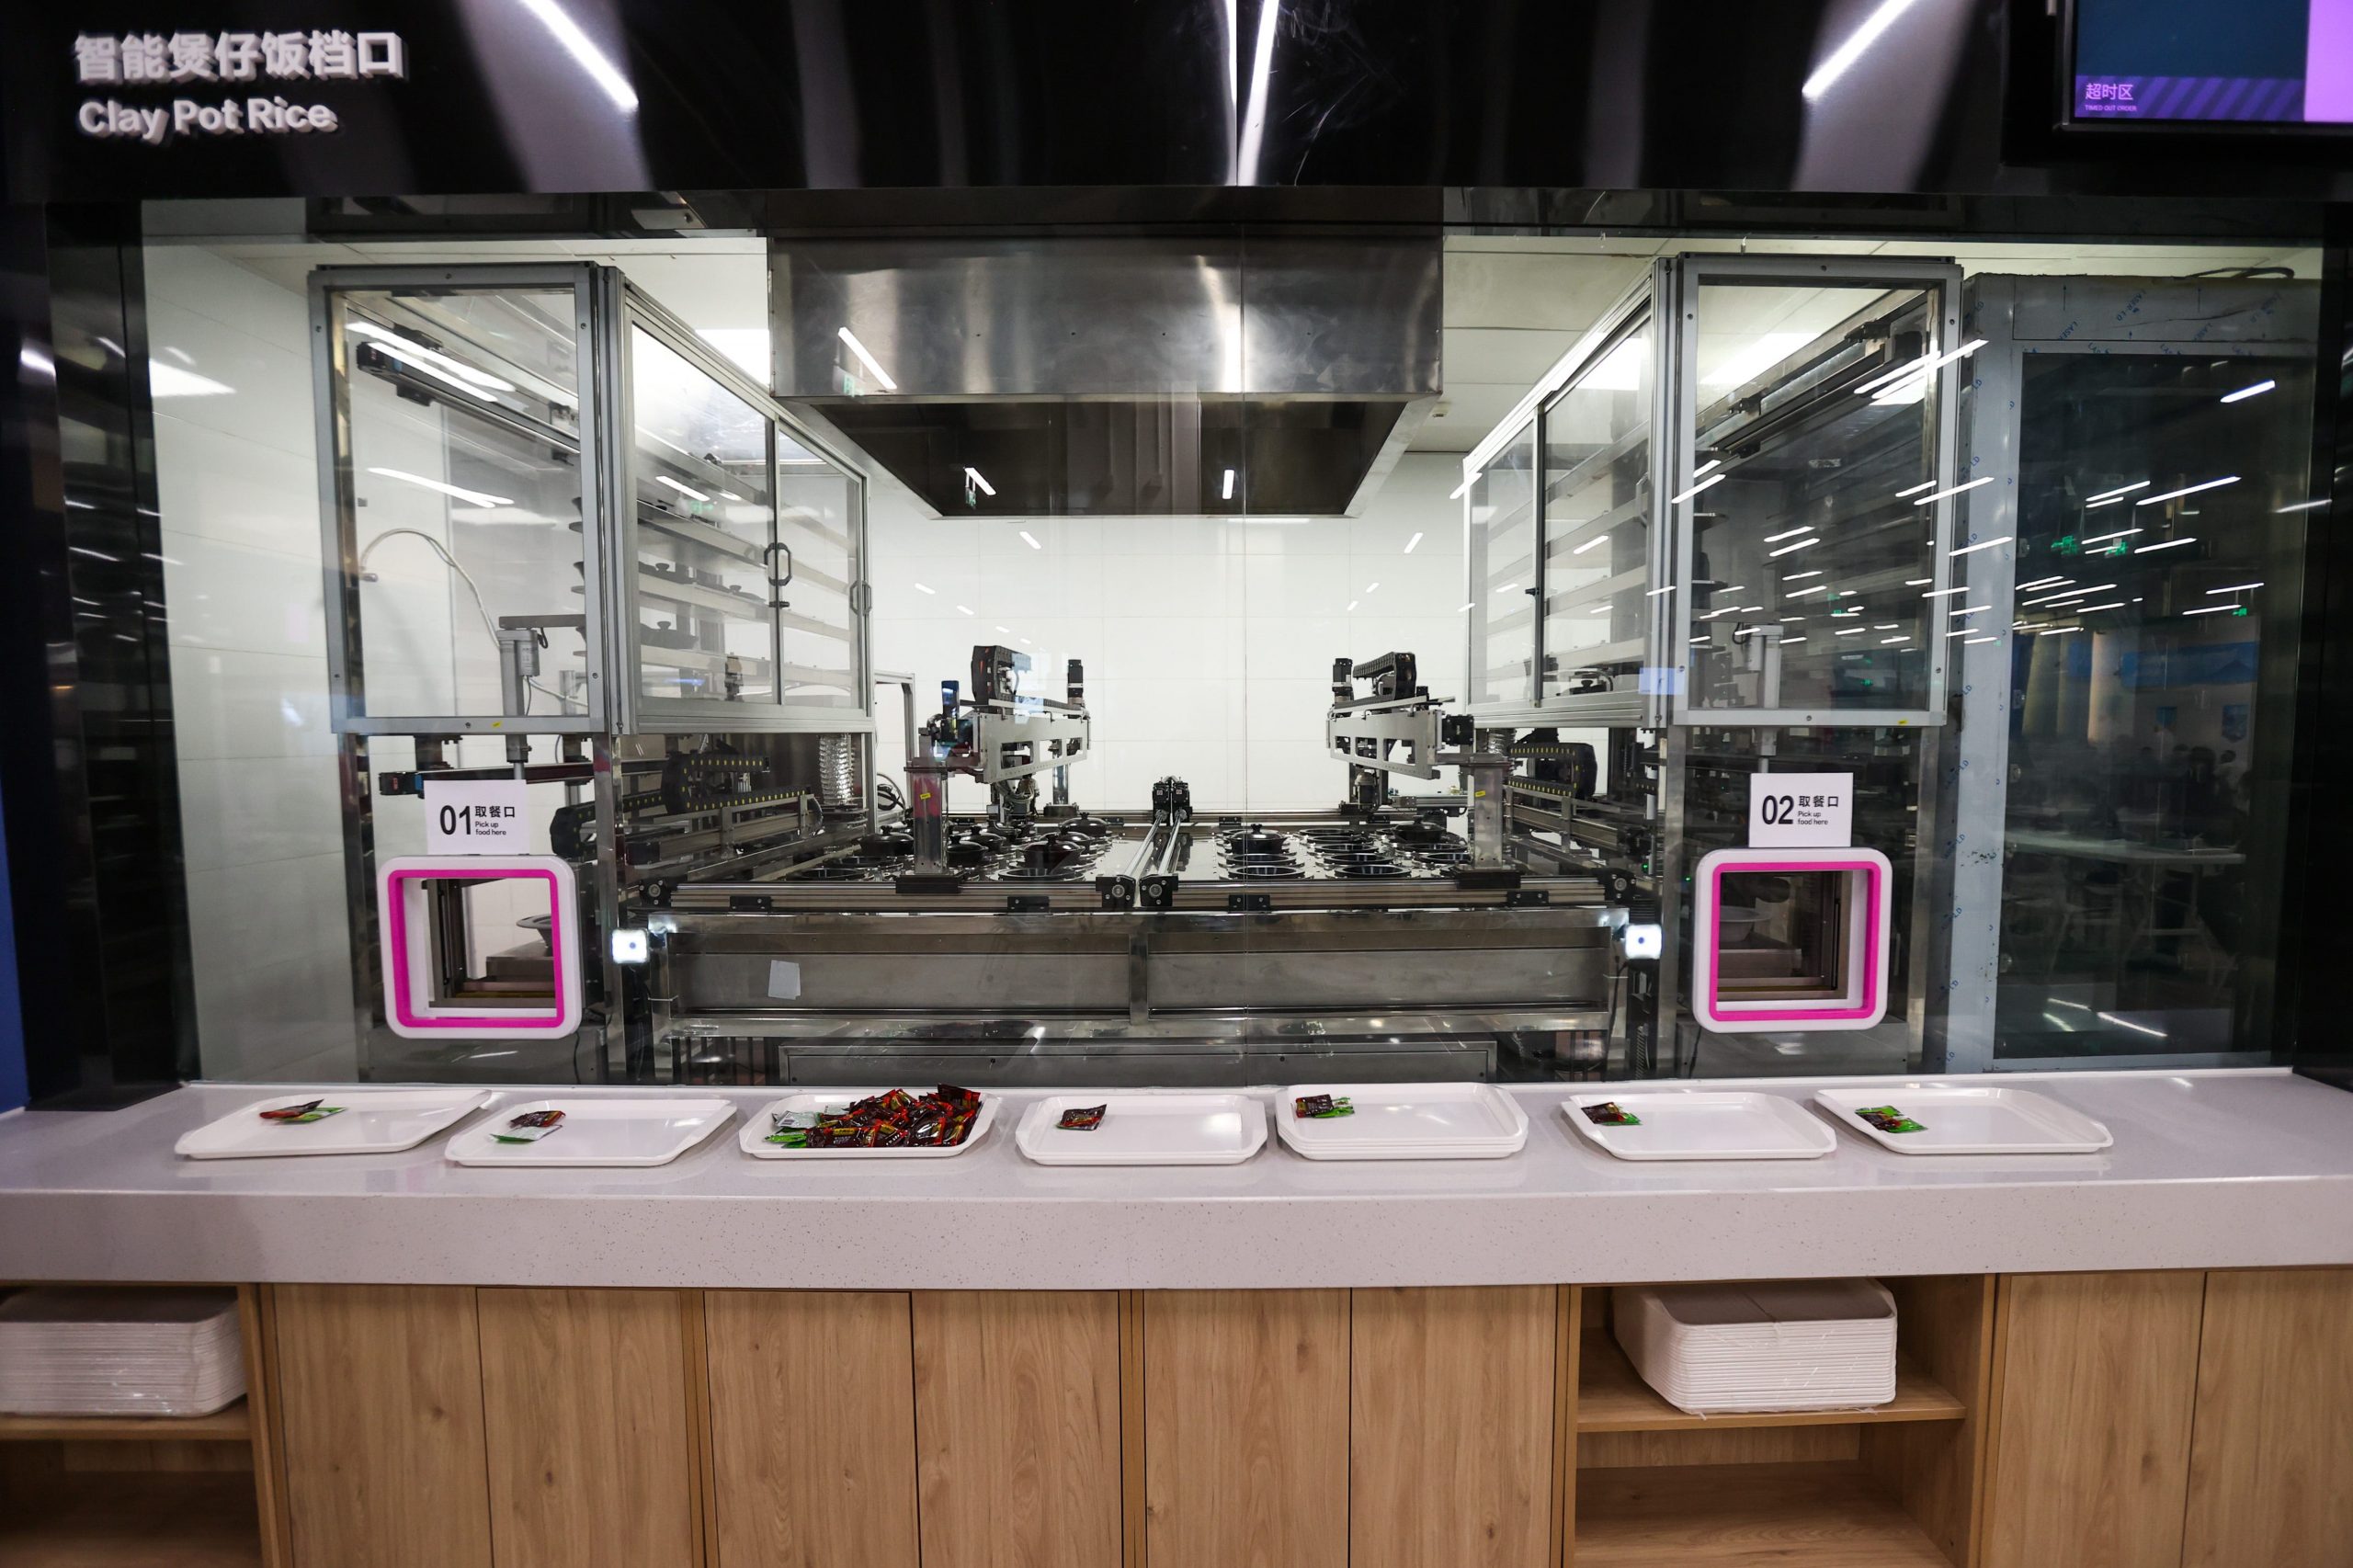 De gerechten in het restaurant worden bereid door robots in een geautomatiseerde keuken. Foto: Liu Lu/VCG via Getty Images